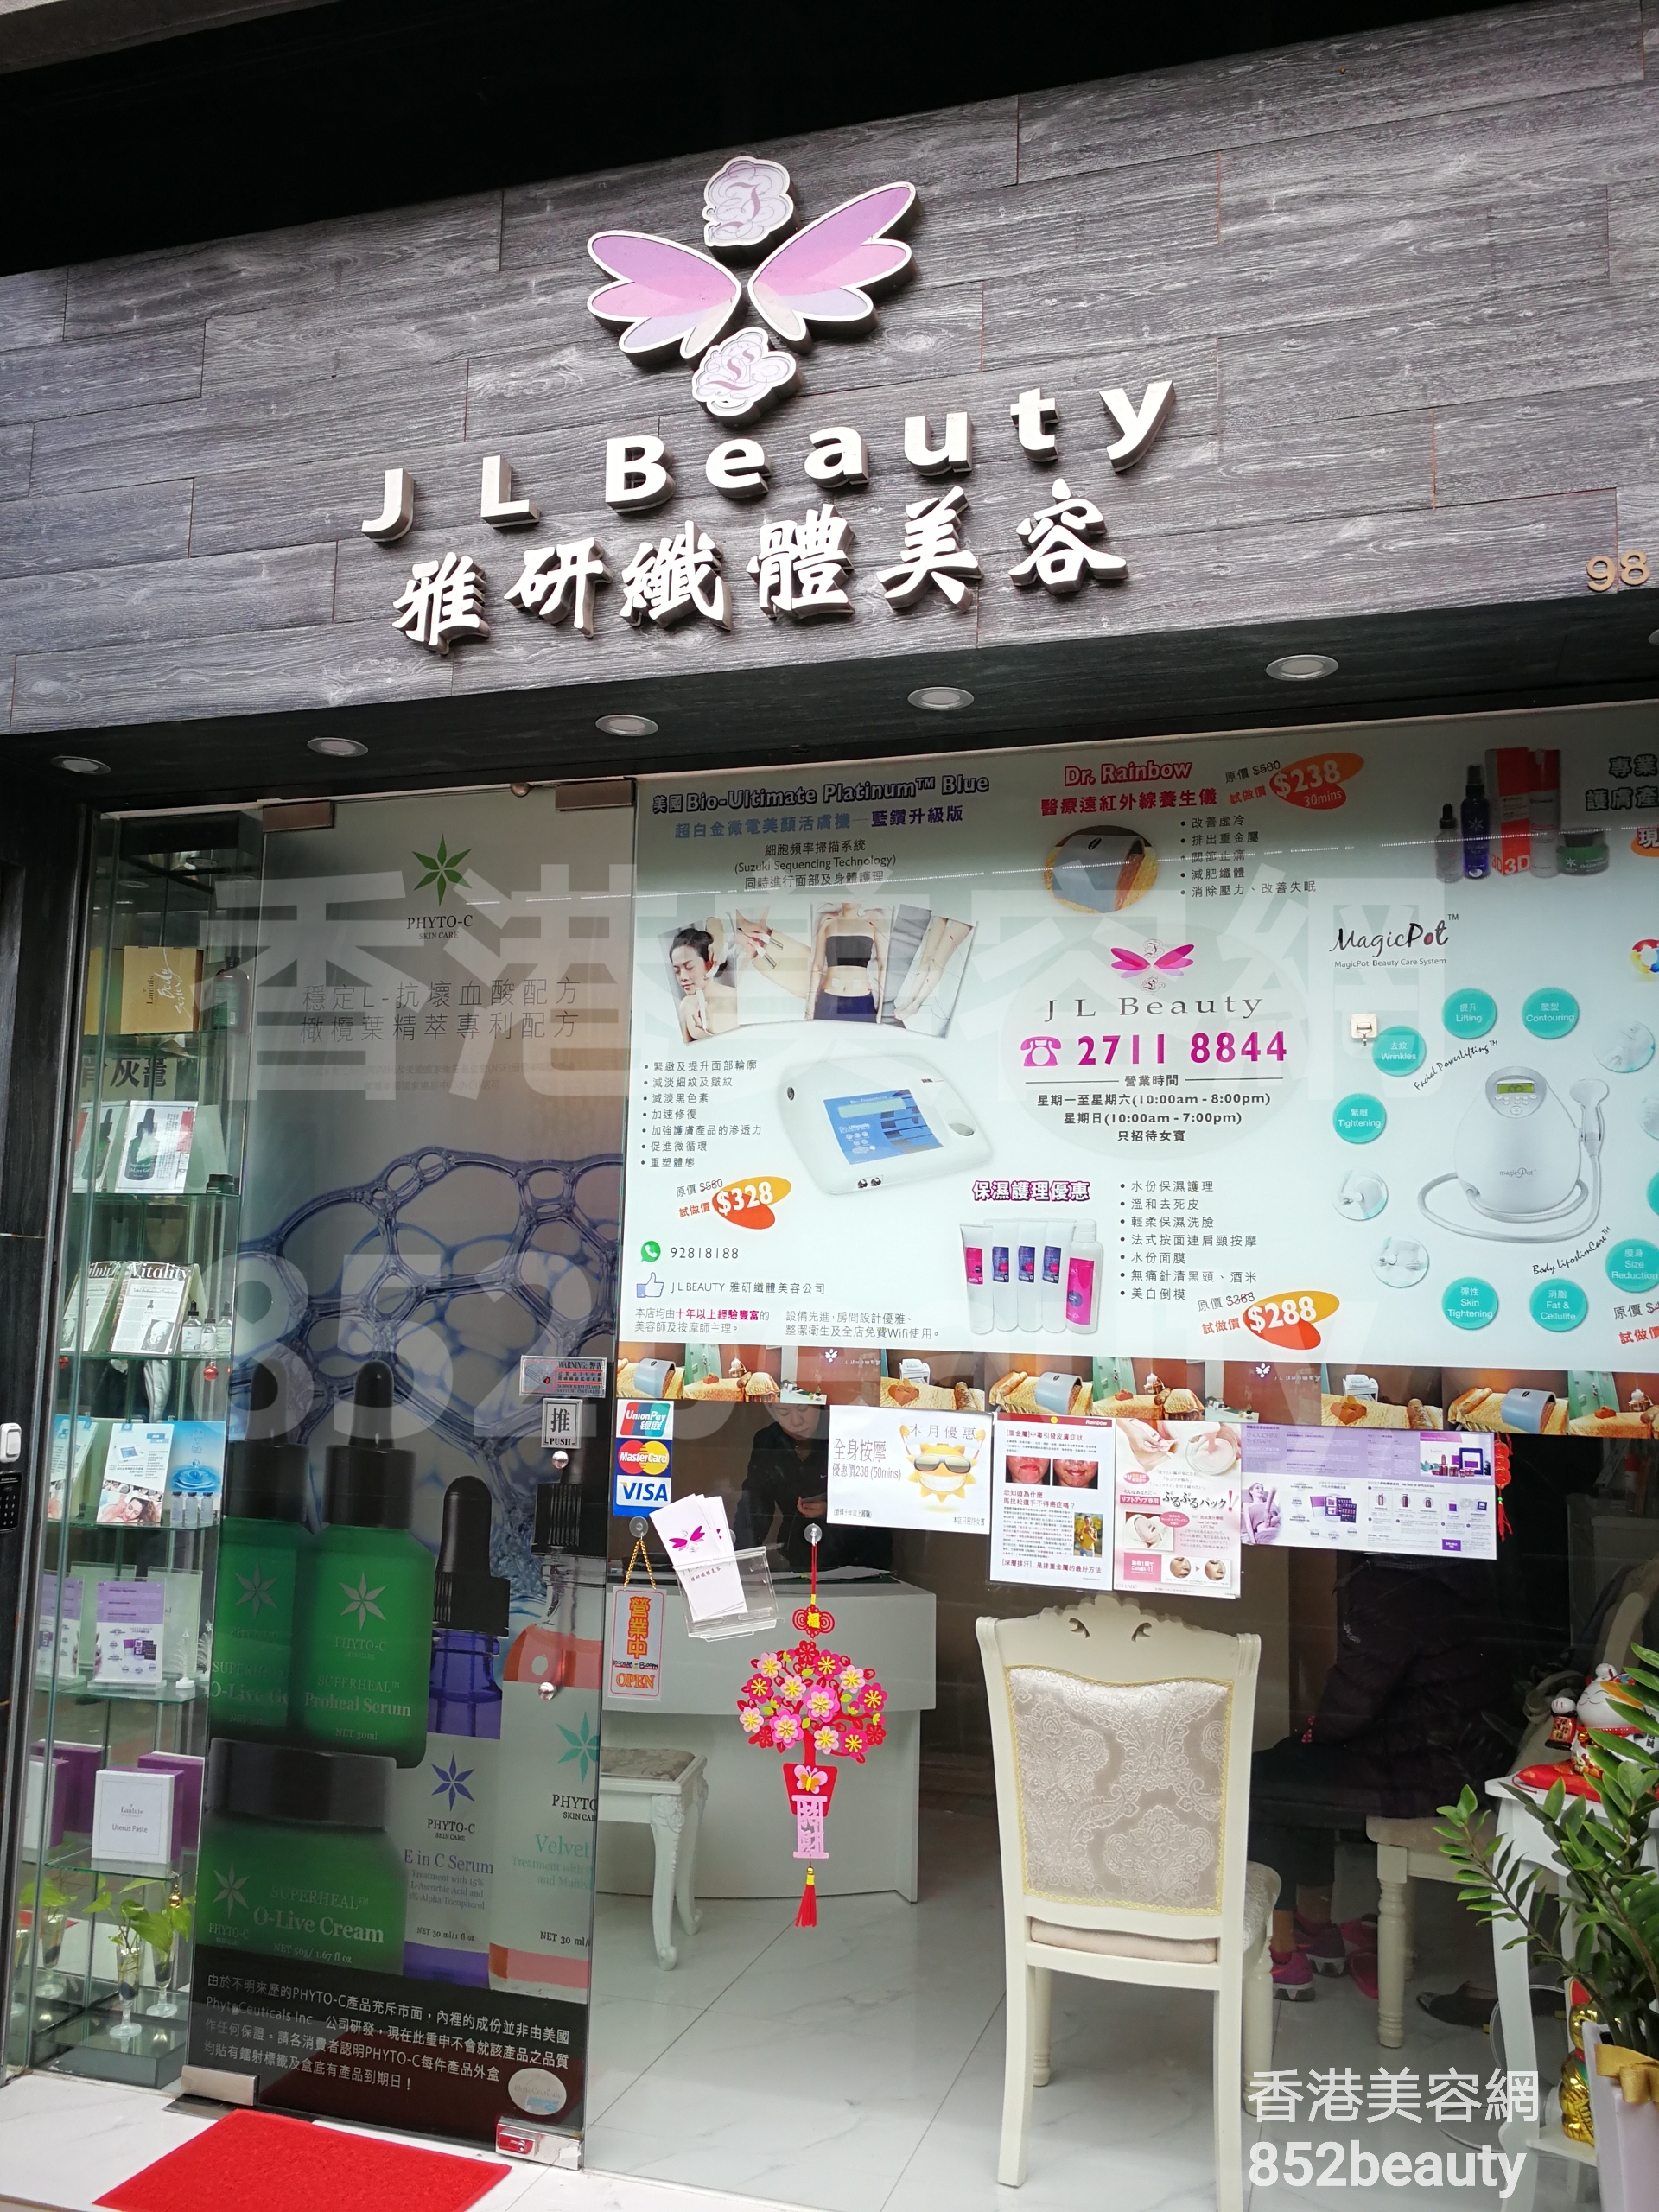 香港美容網 Hong Kong Beauty Salon 美容院 / 美容師: J L Beauty